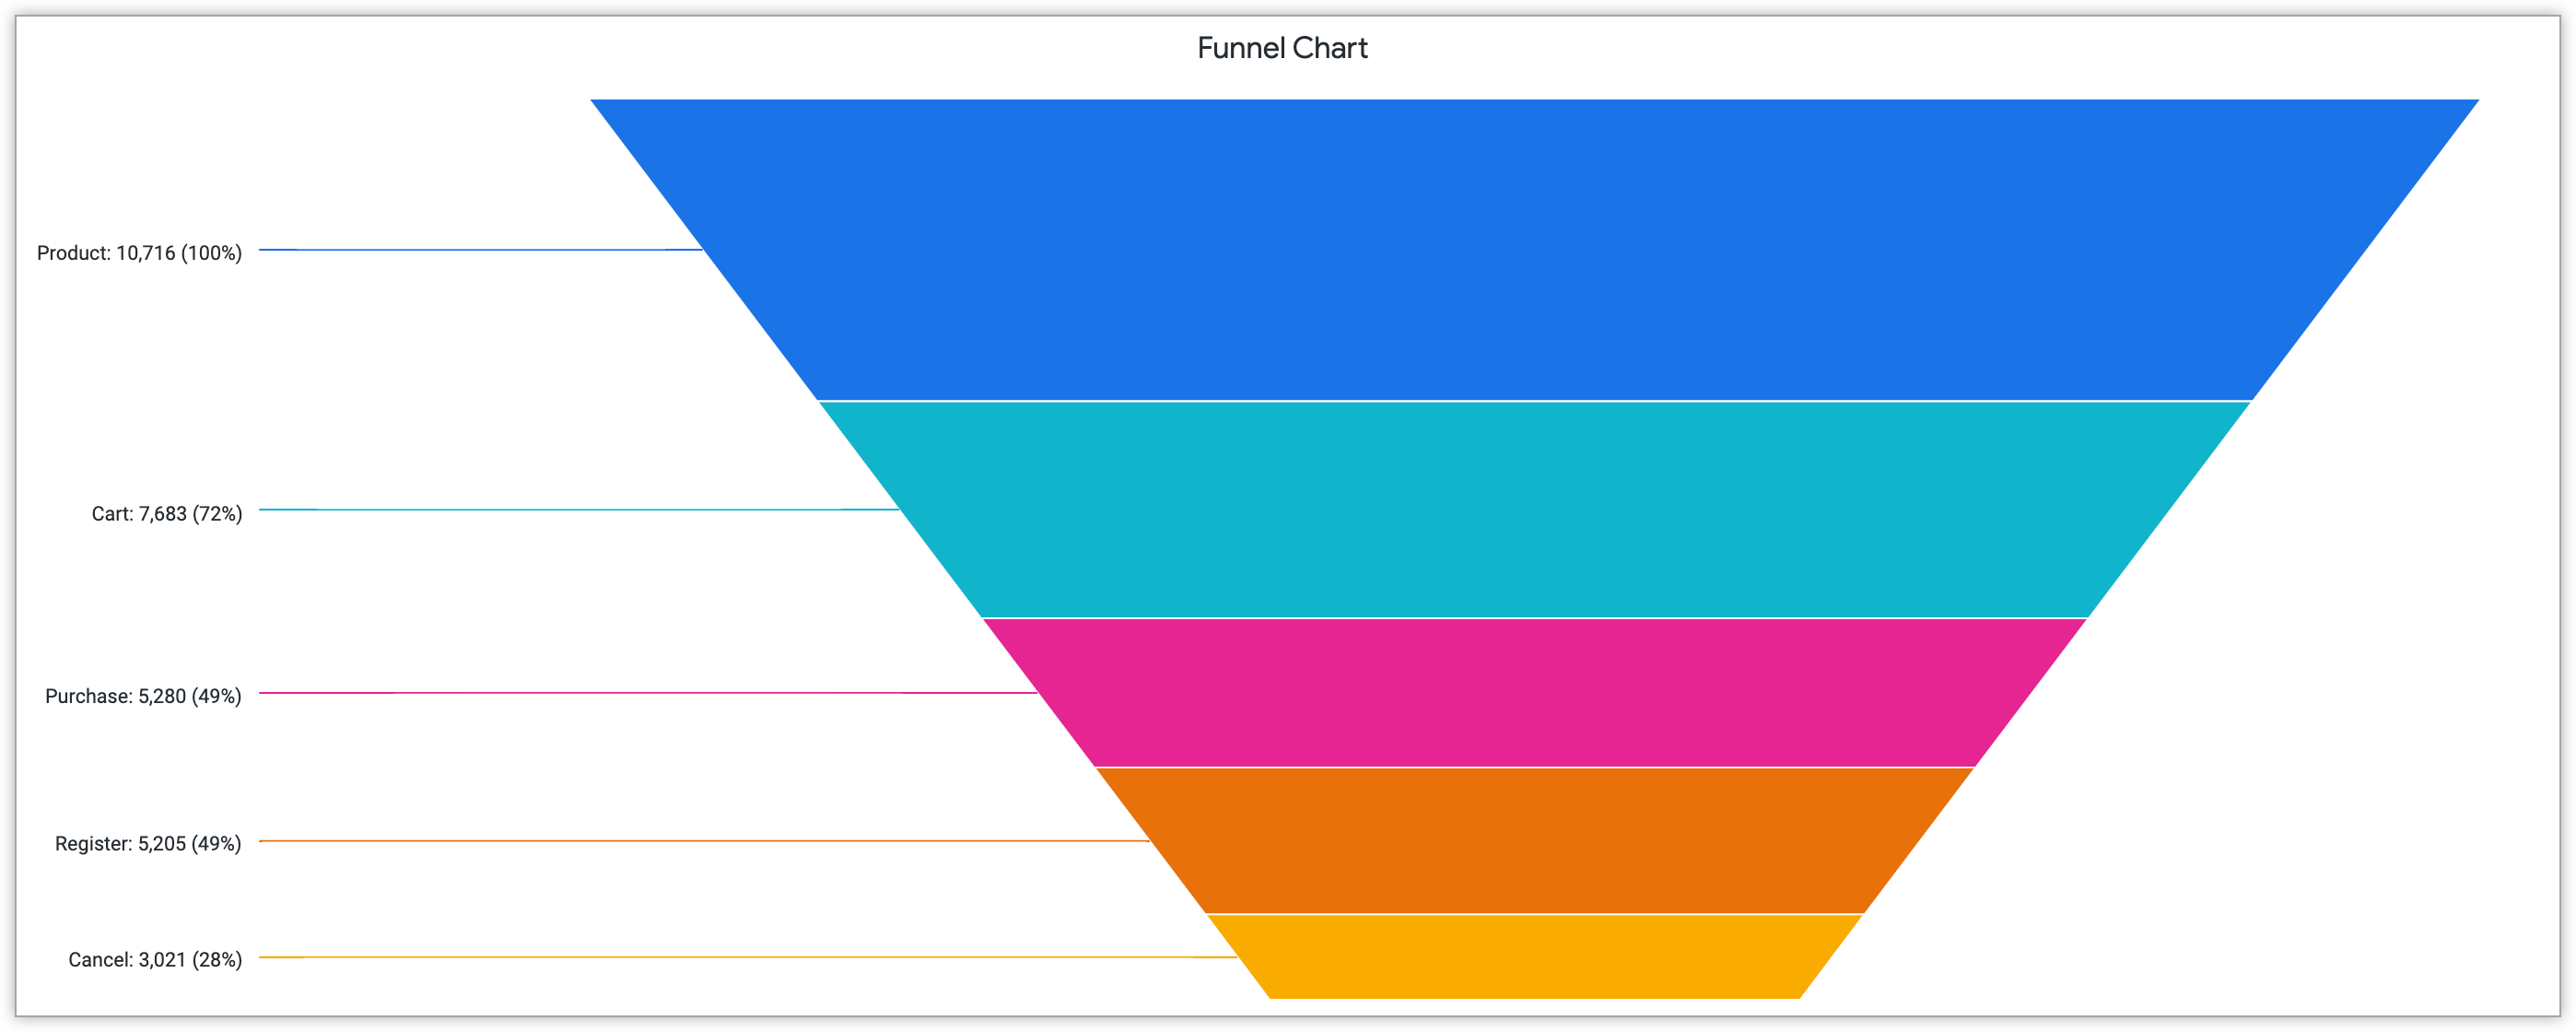 Gráfico de embudo que muestra el porcentaje de acciones de los clientes en las etapas Producto, Carrito, Compra, Registro y Cancelación.